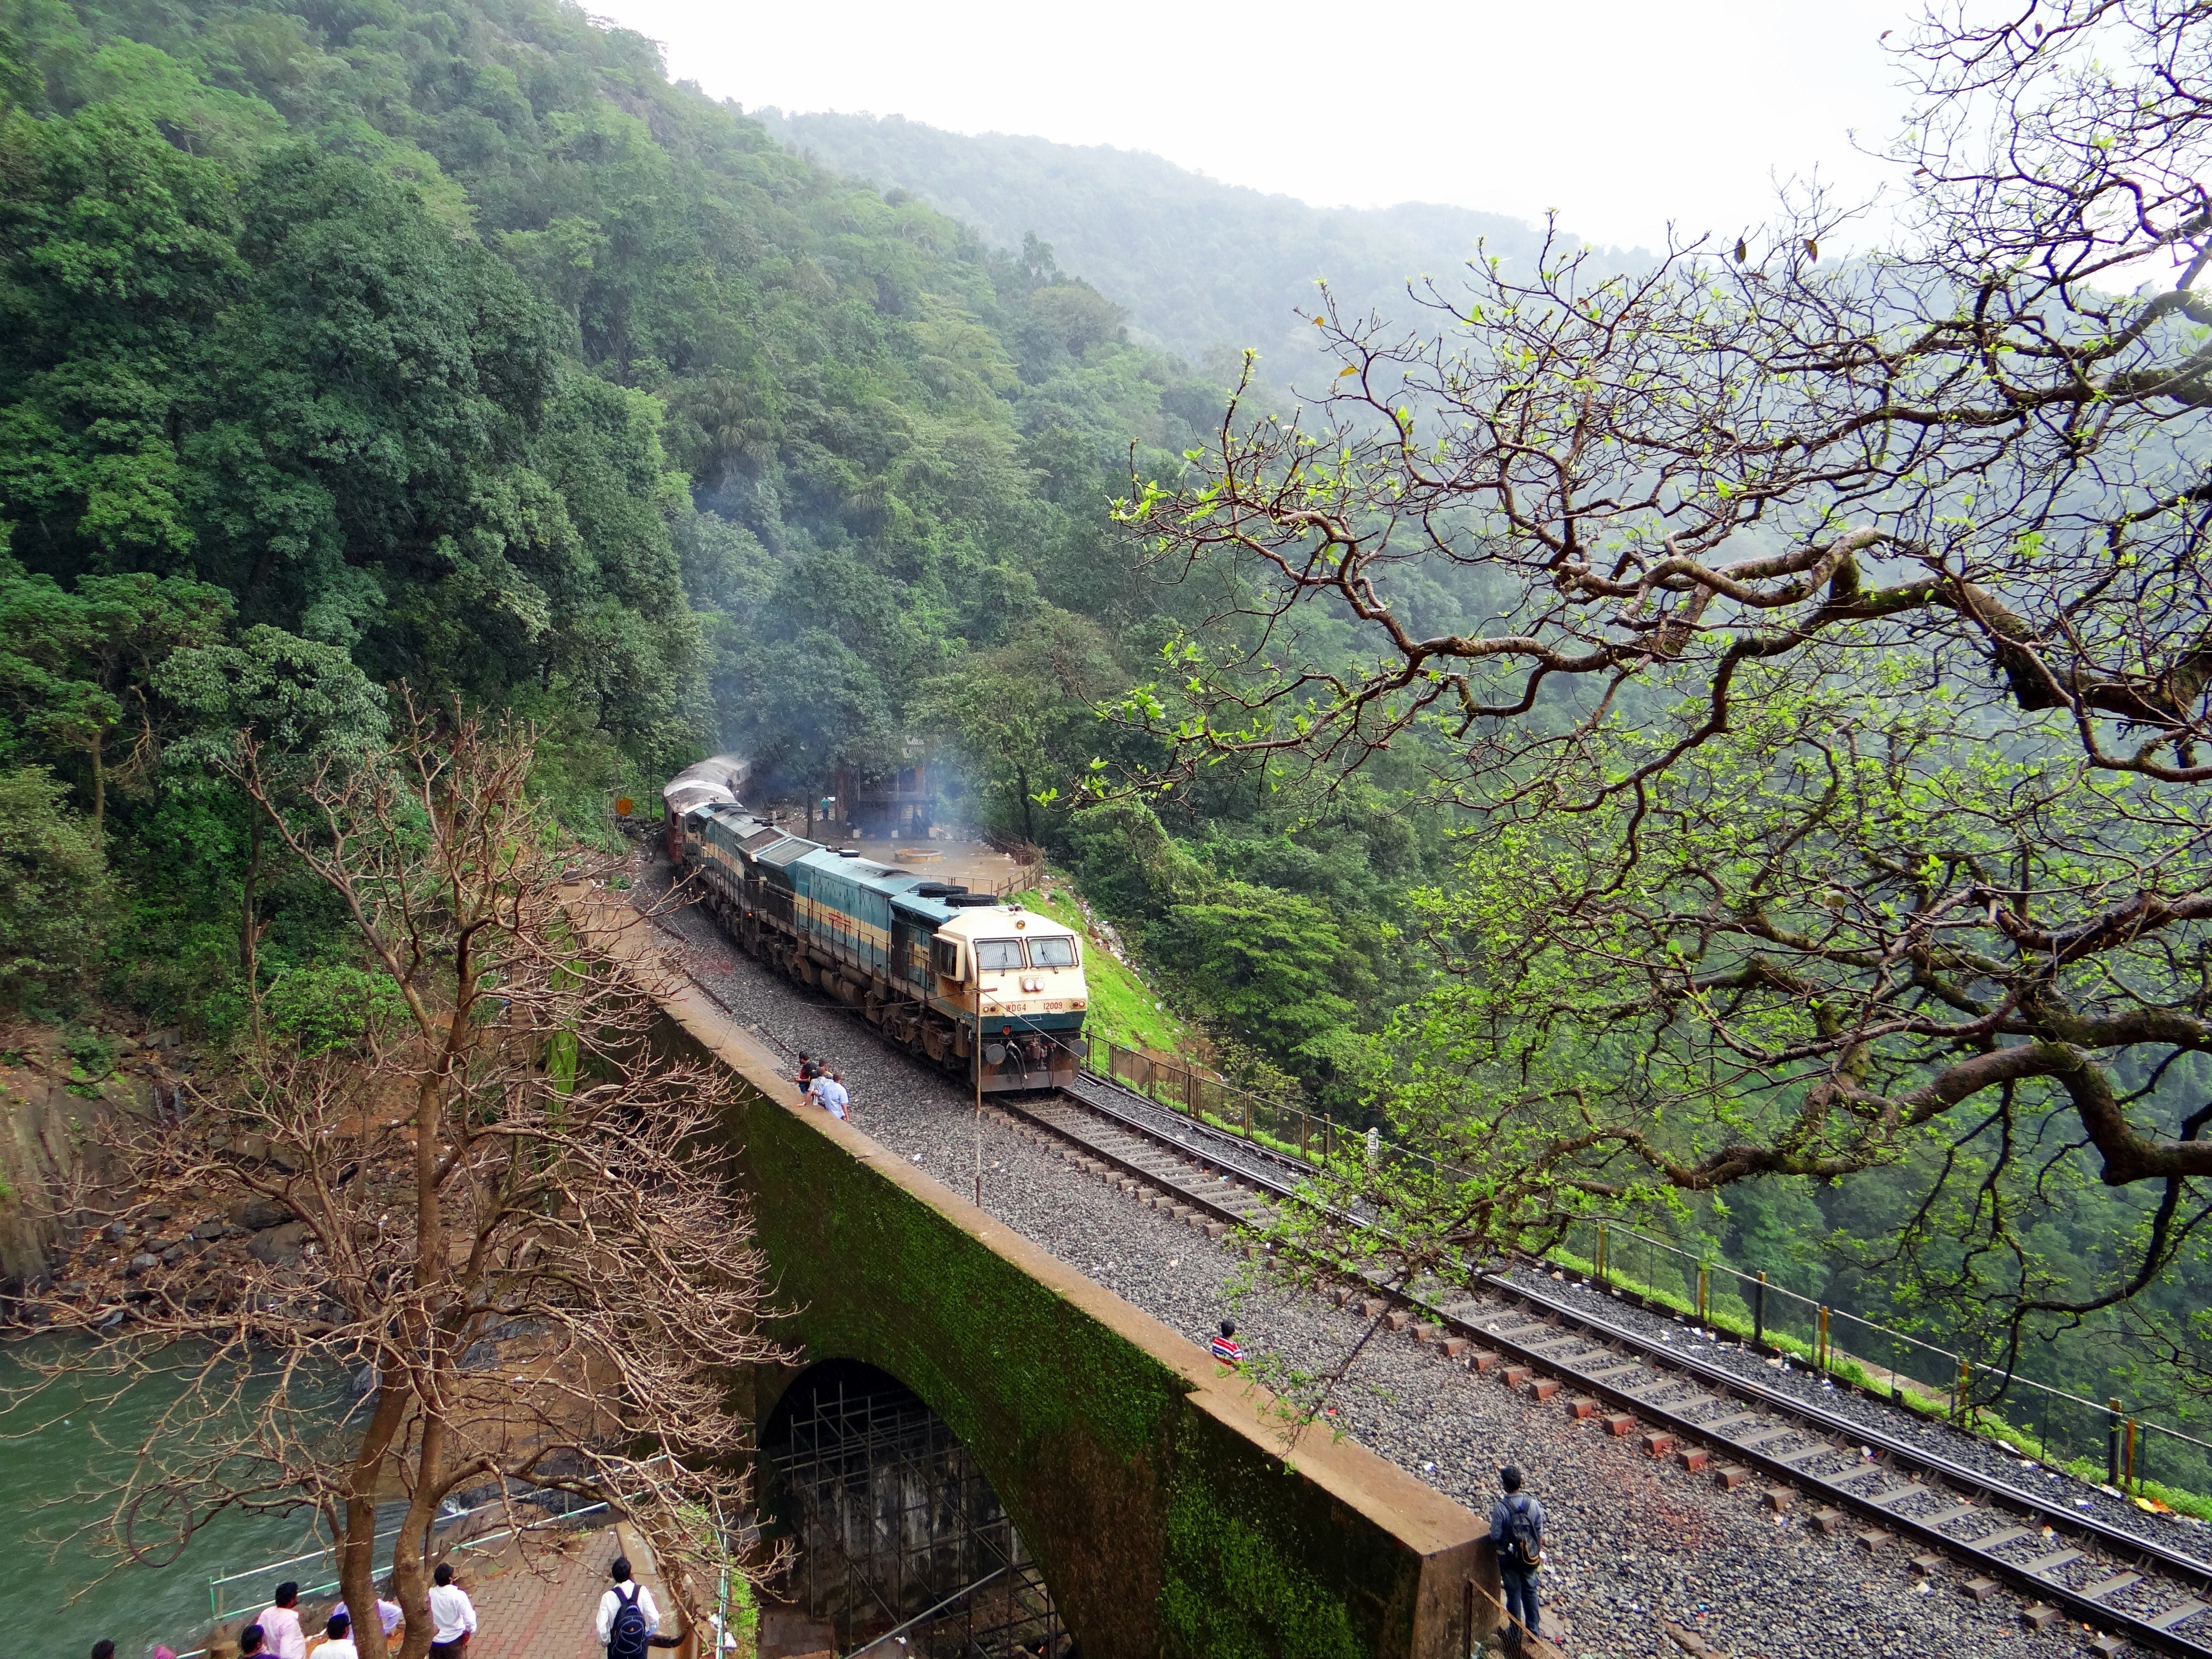 train passing on bridge during daytime